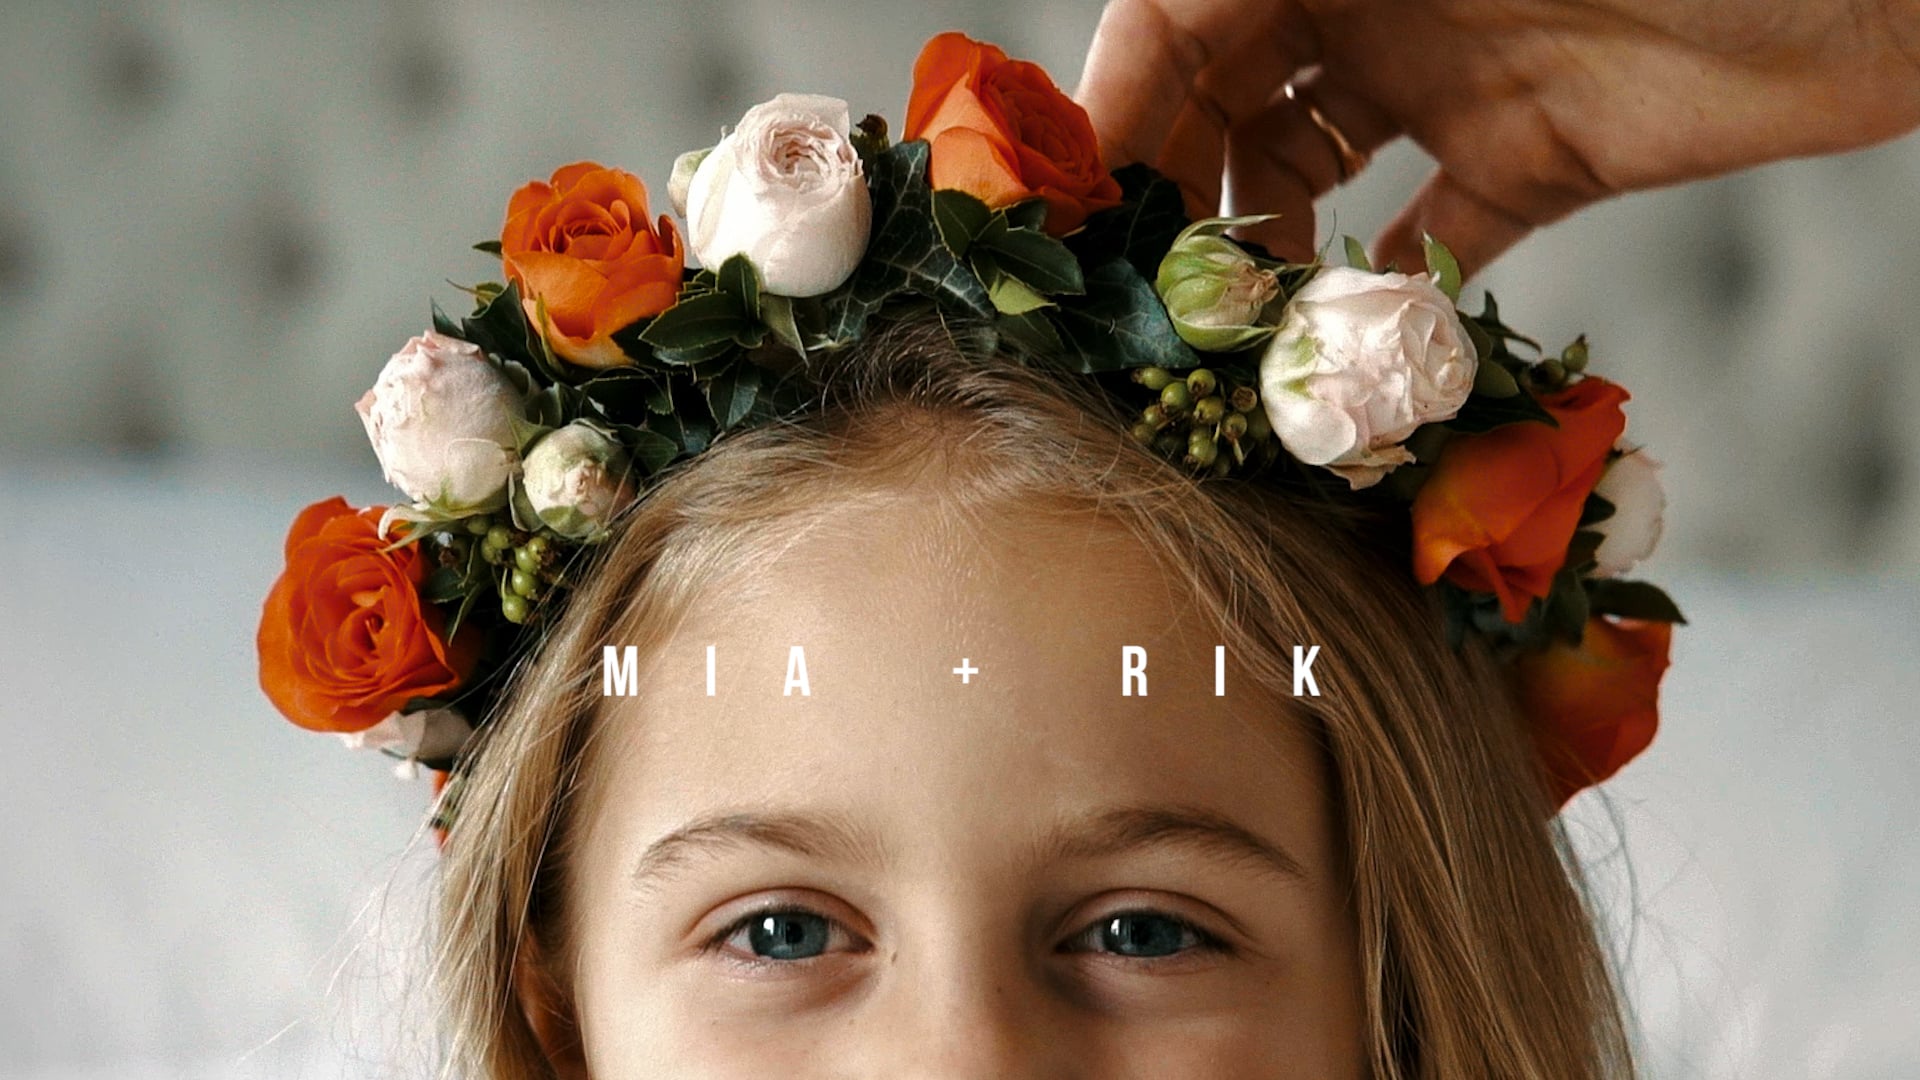 Mia & Rik  |  The Wedding Film